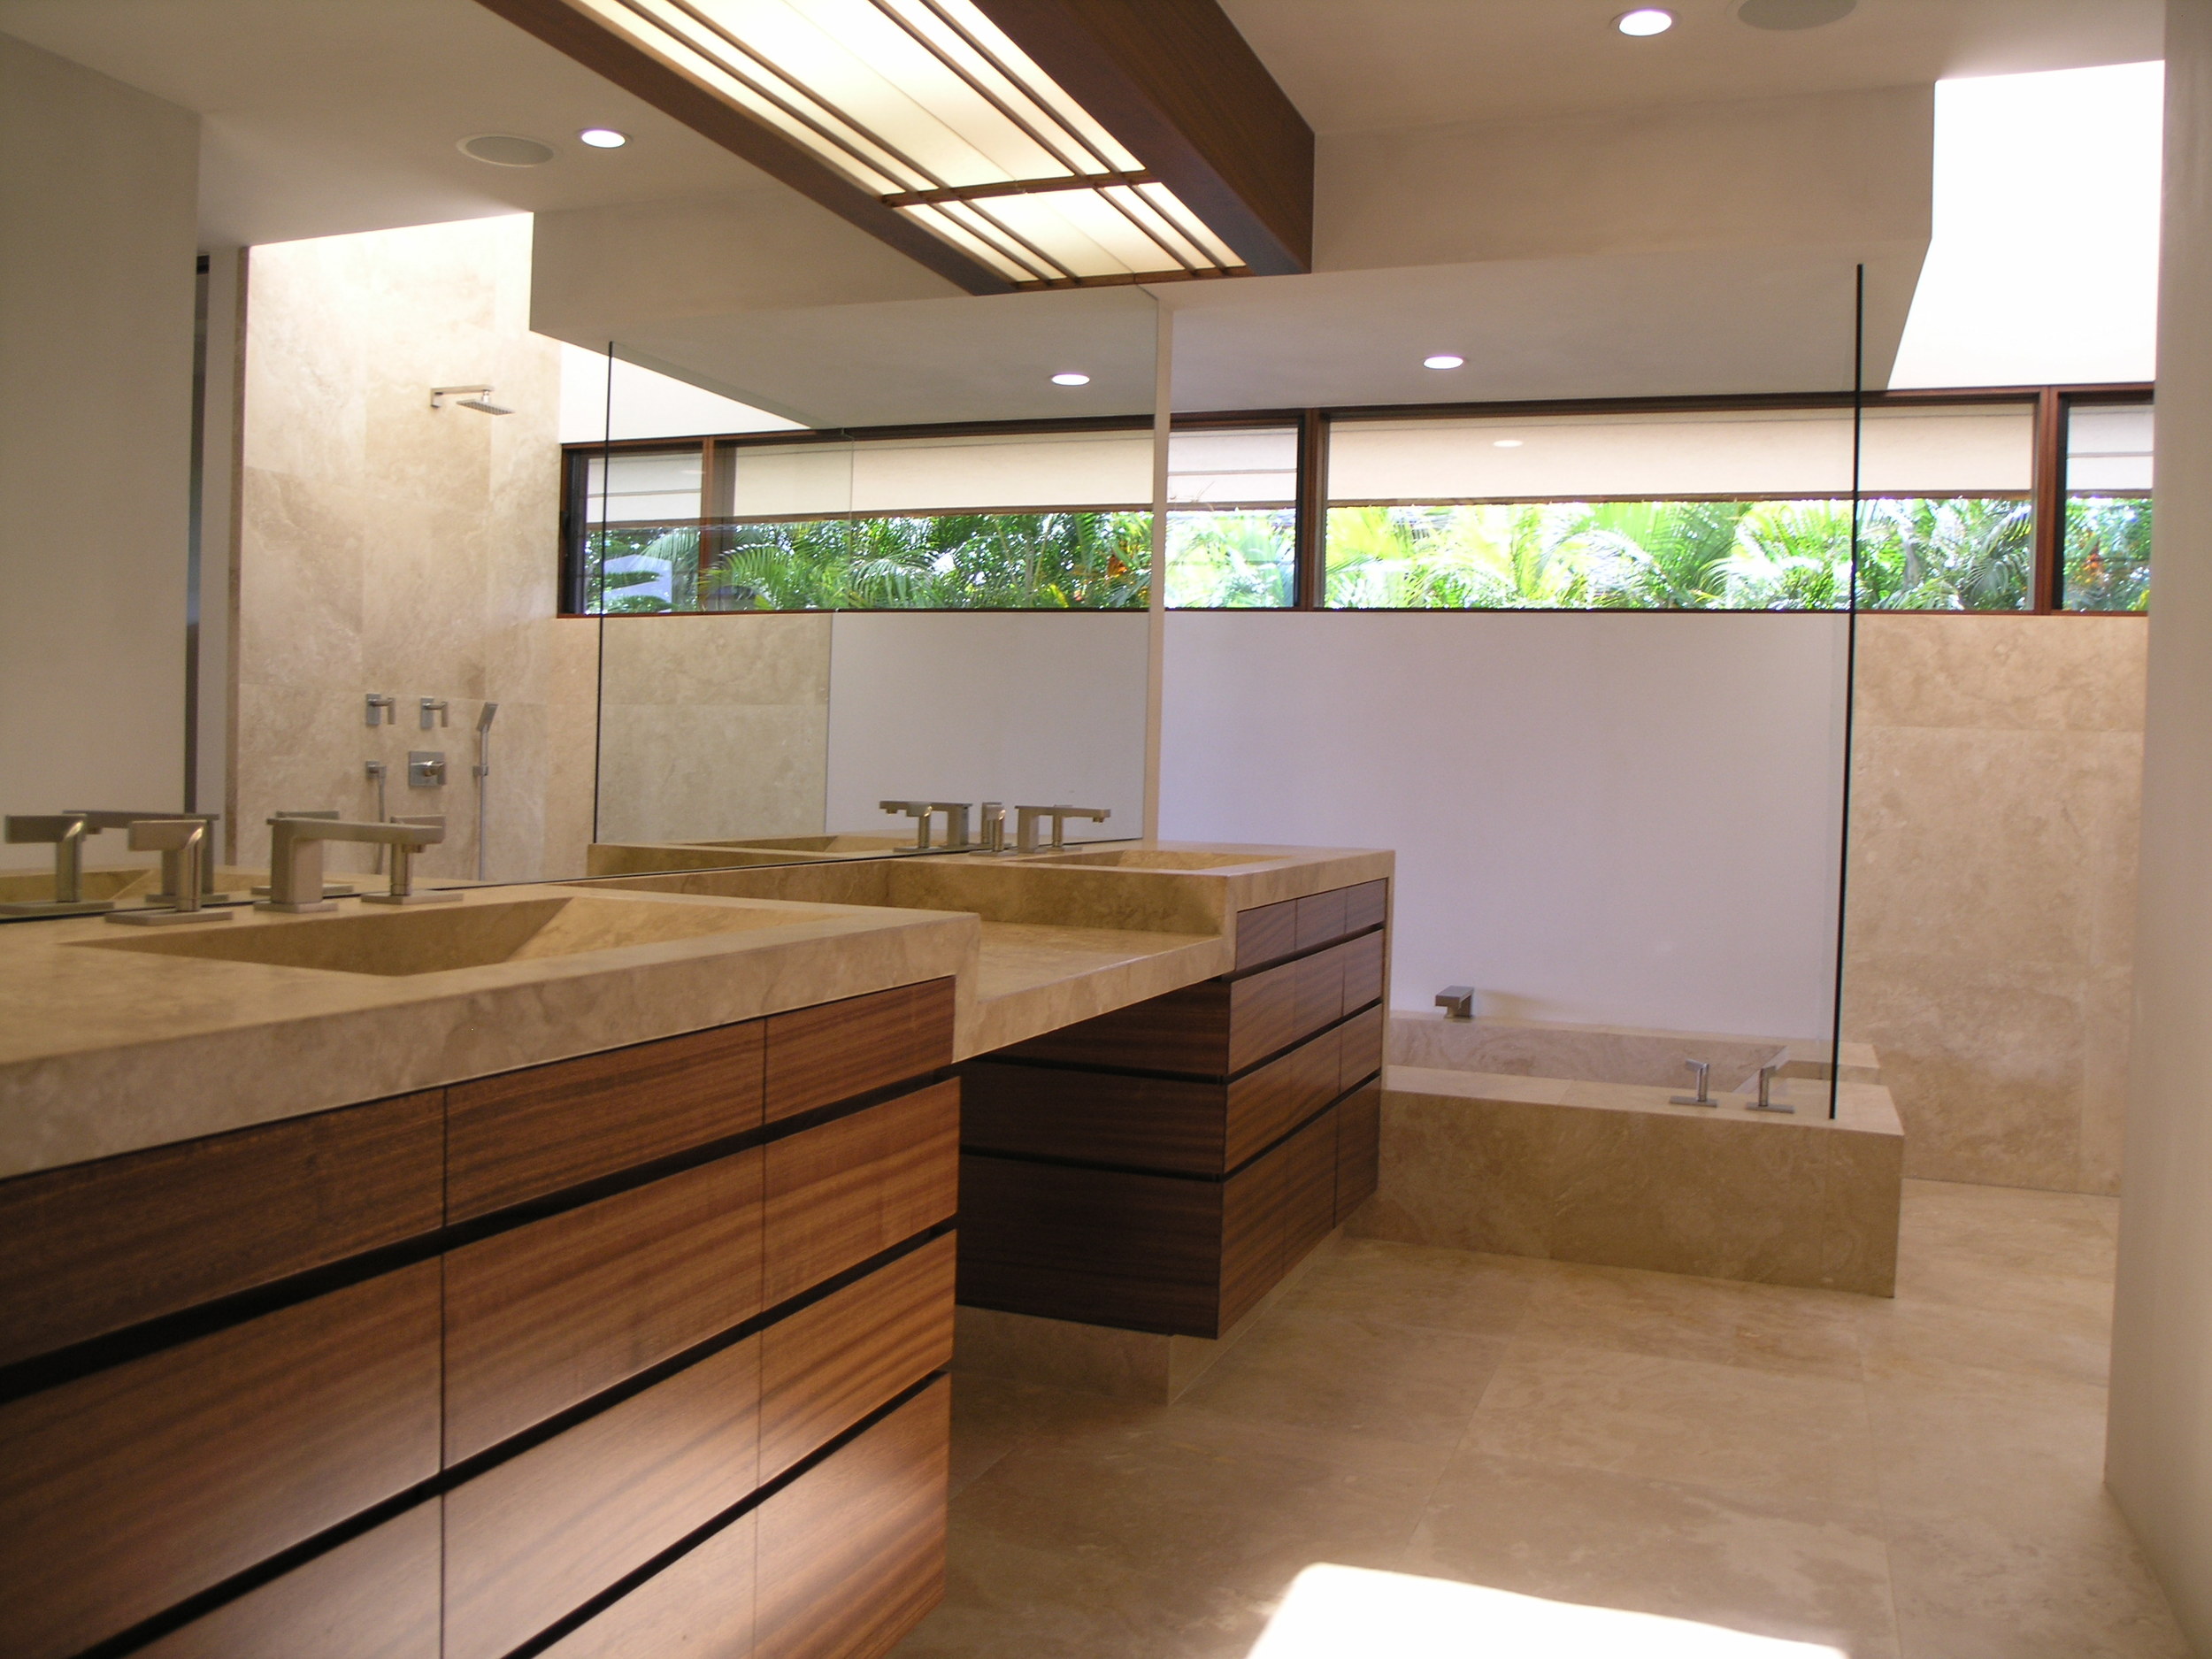 baths d kauai vanity 2.JPG